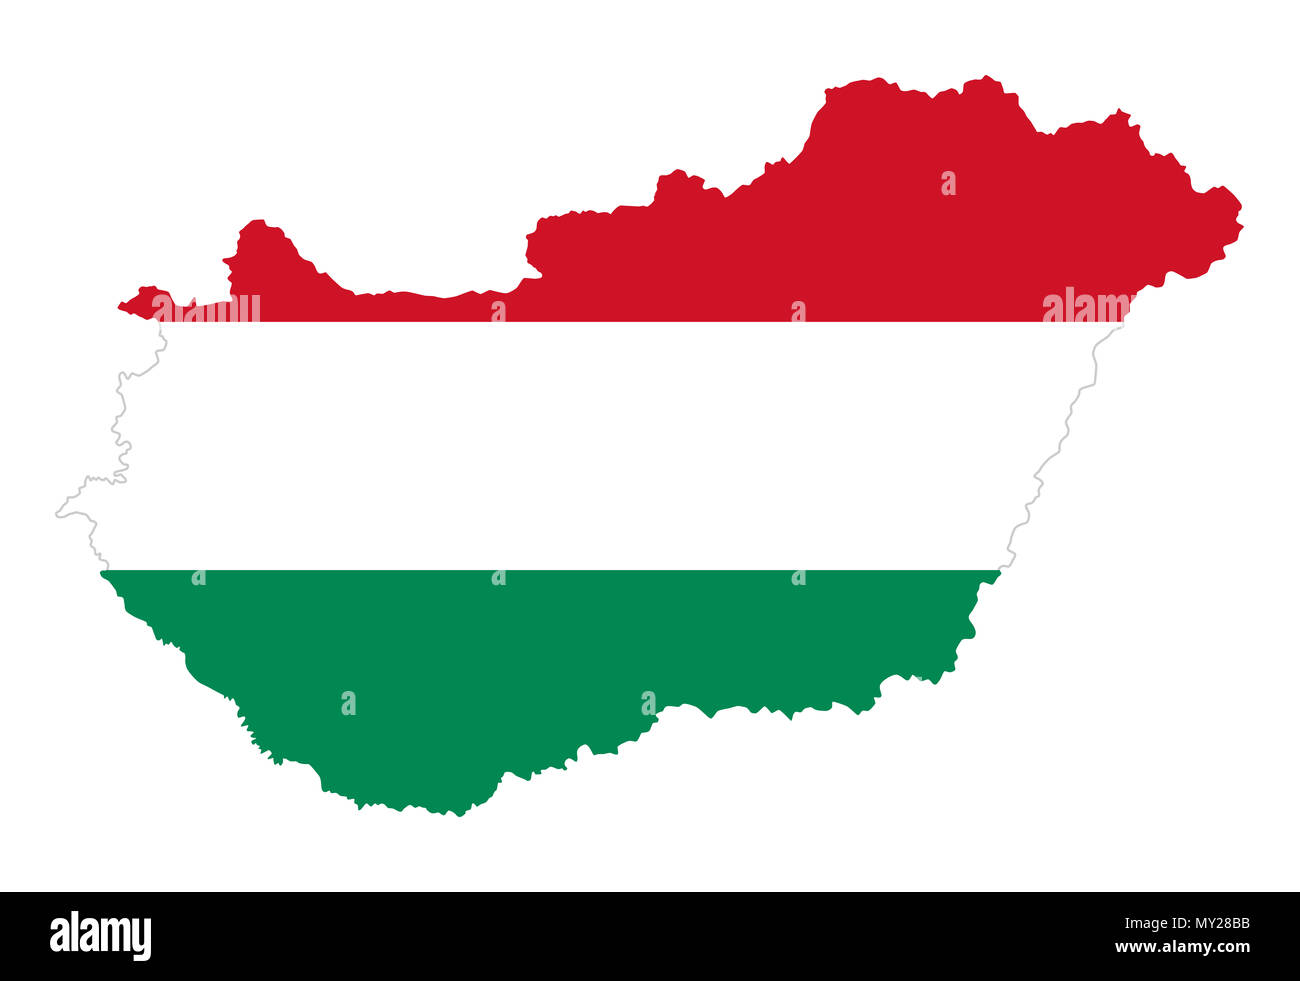 Flagge Ungarn im Land Silhouette. Die ungarische Trikolore, horizontalen roten, weißen und grünen Streifen im Land. Staat in Mitteleuropa. Stockfoto